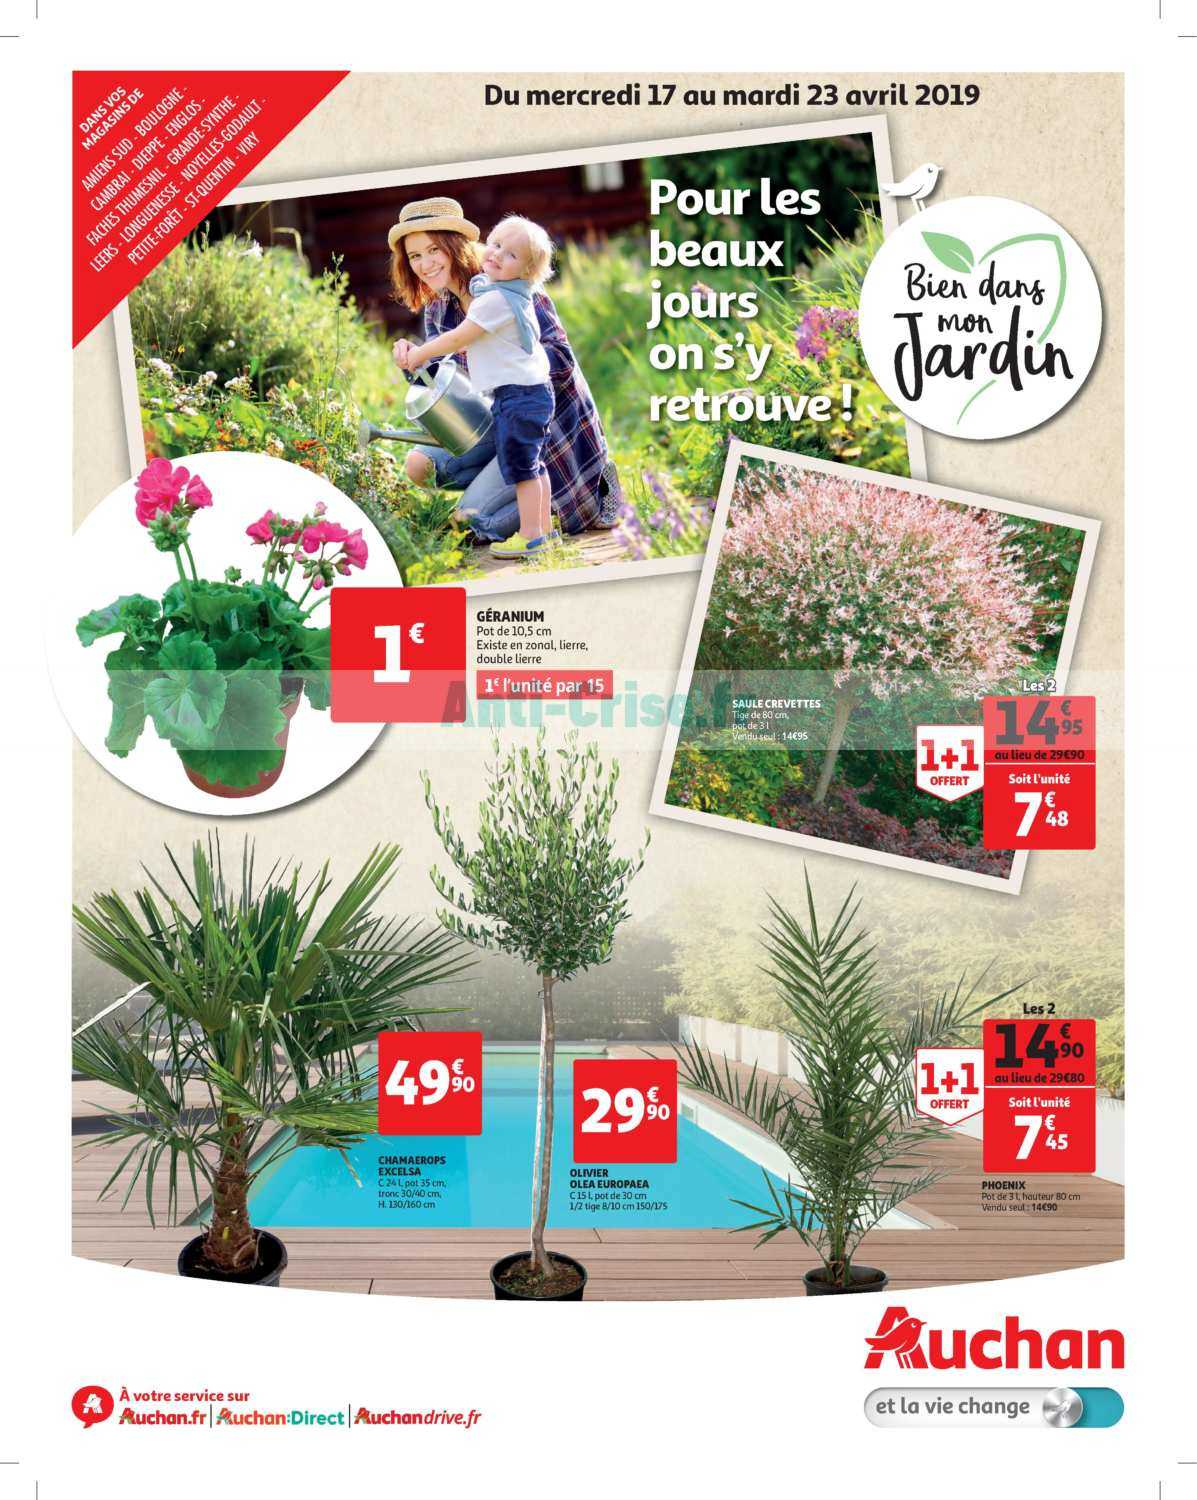 Catalogue Auchan Du 17 Au 23 Avril 2019 (Jardin dedans Salon De Jardin Auchan